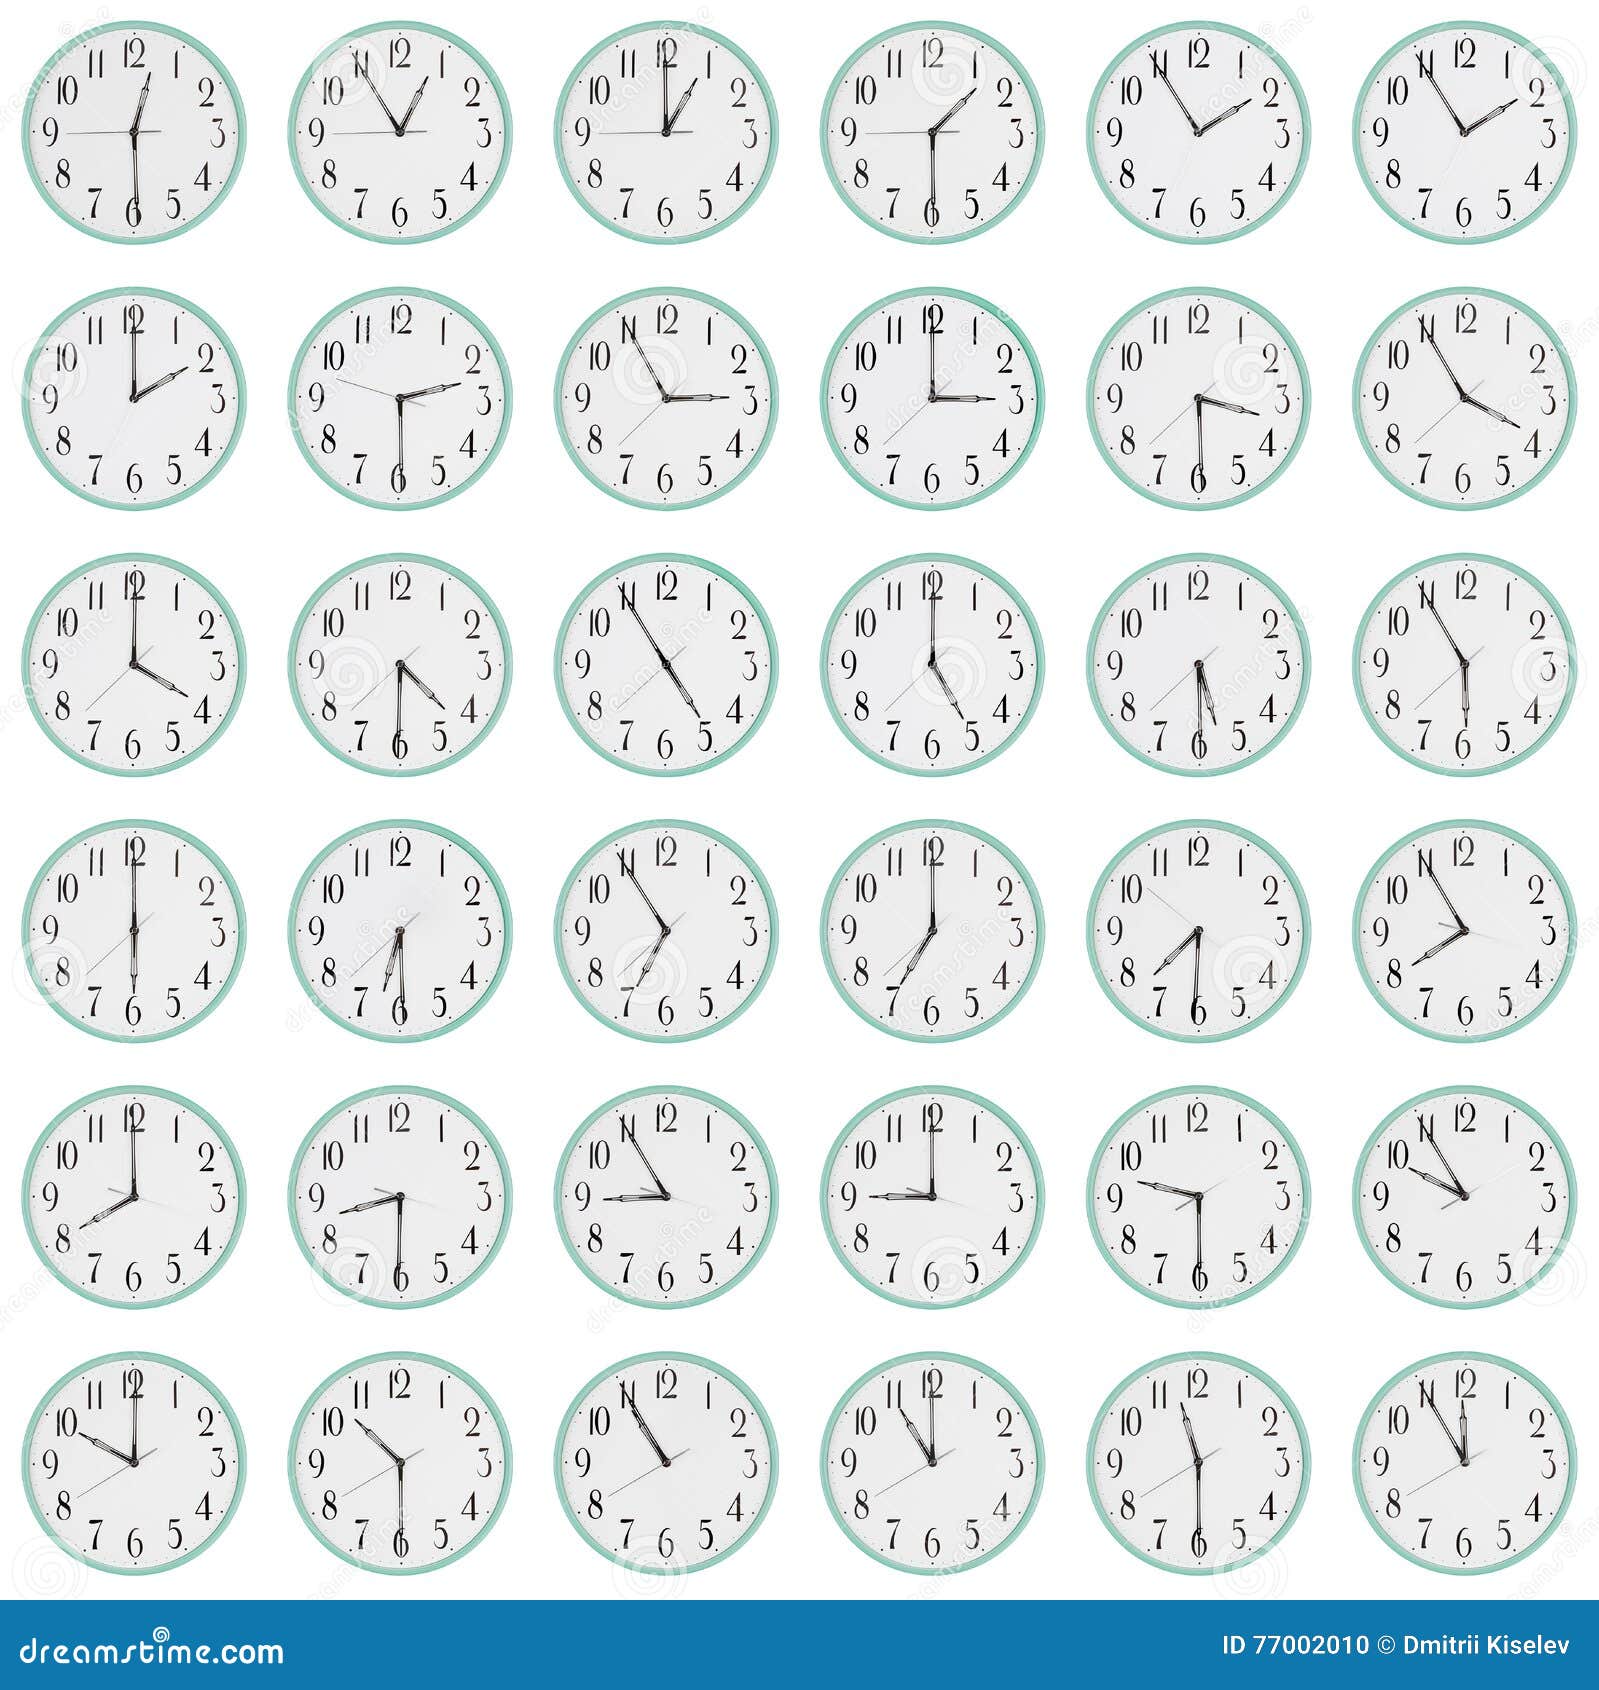 Часы показывающие разное время. Циферблаты с разным временем. Циферблат часов с разным временем. Циферблаты с разным временем для детей. Циферблаты для тренировки времени.